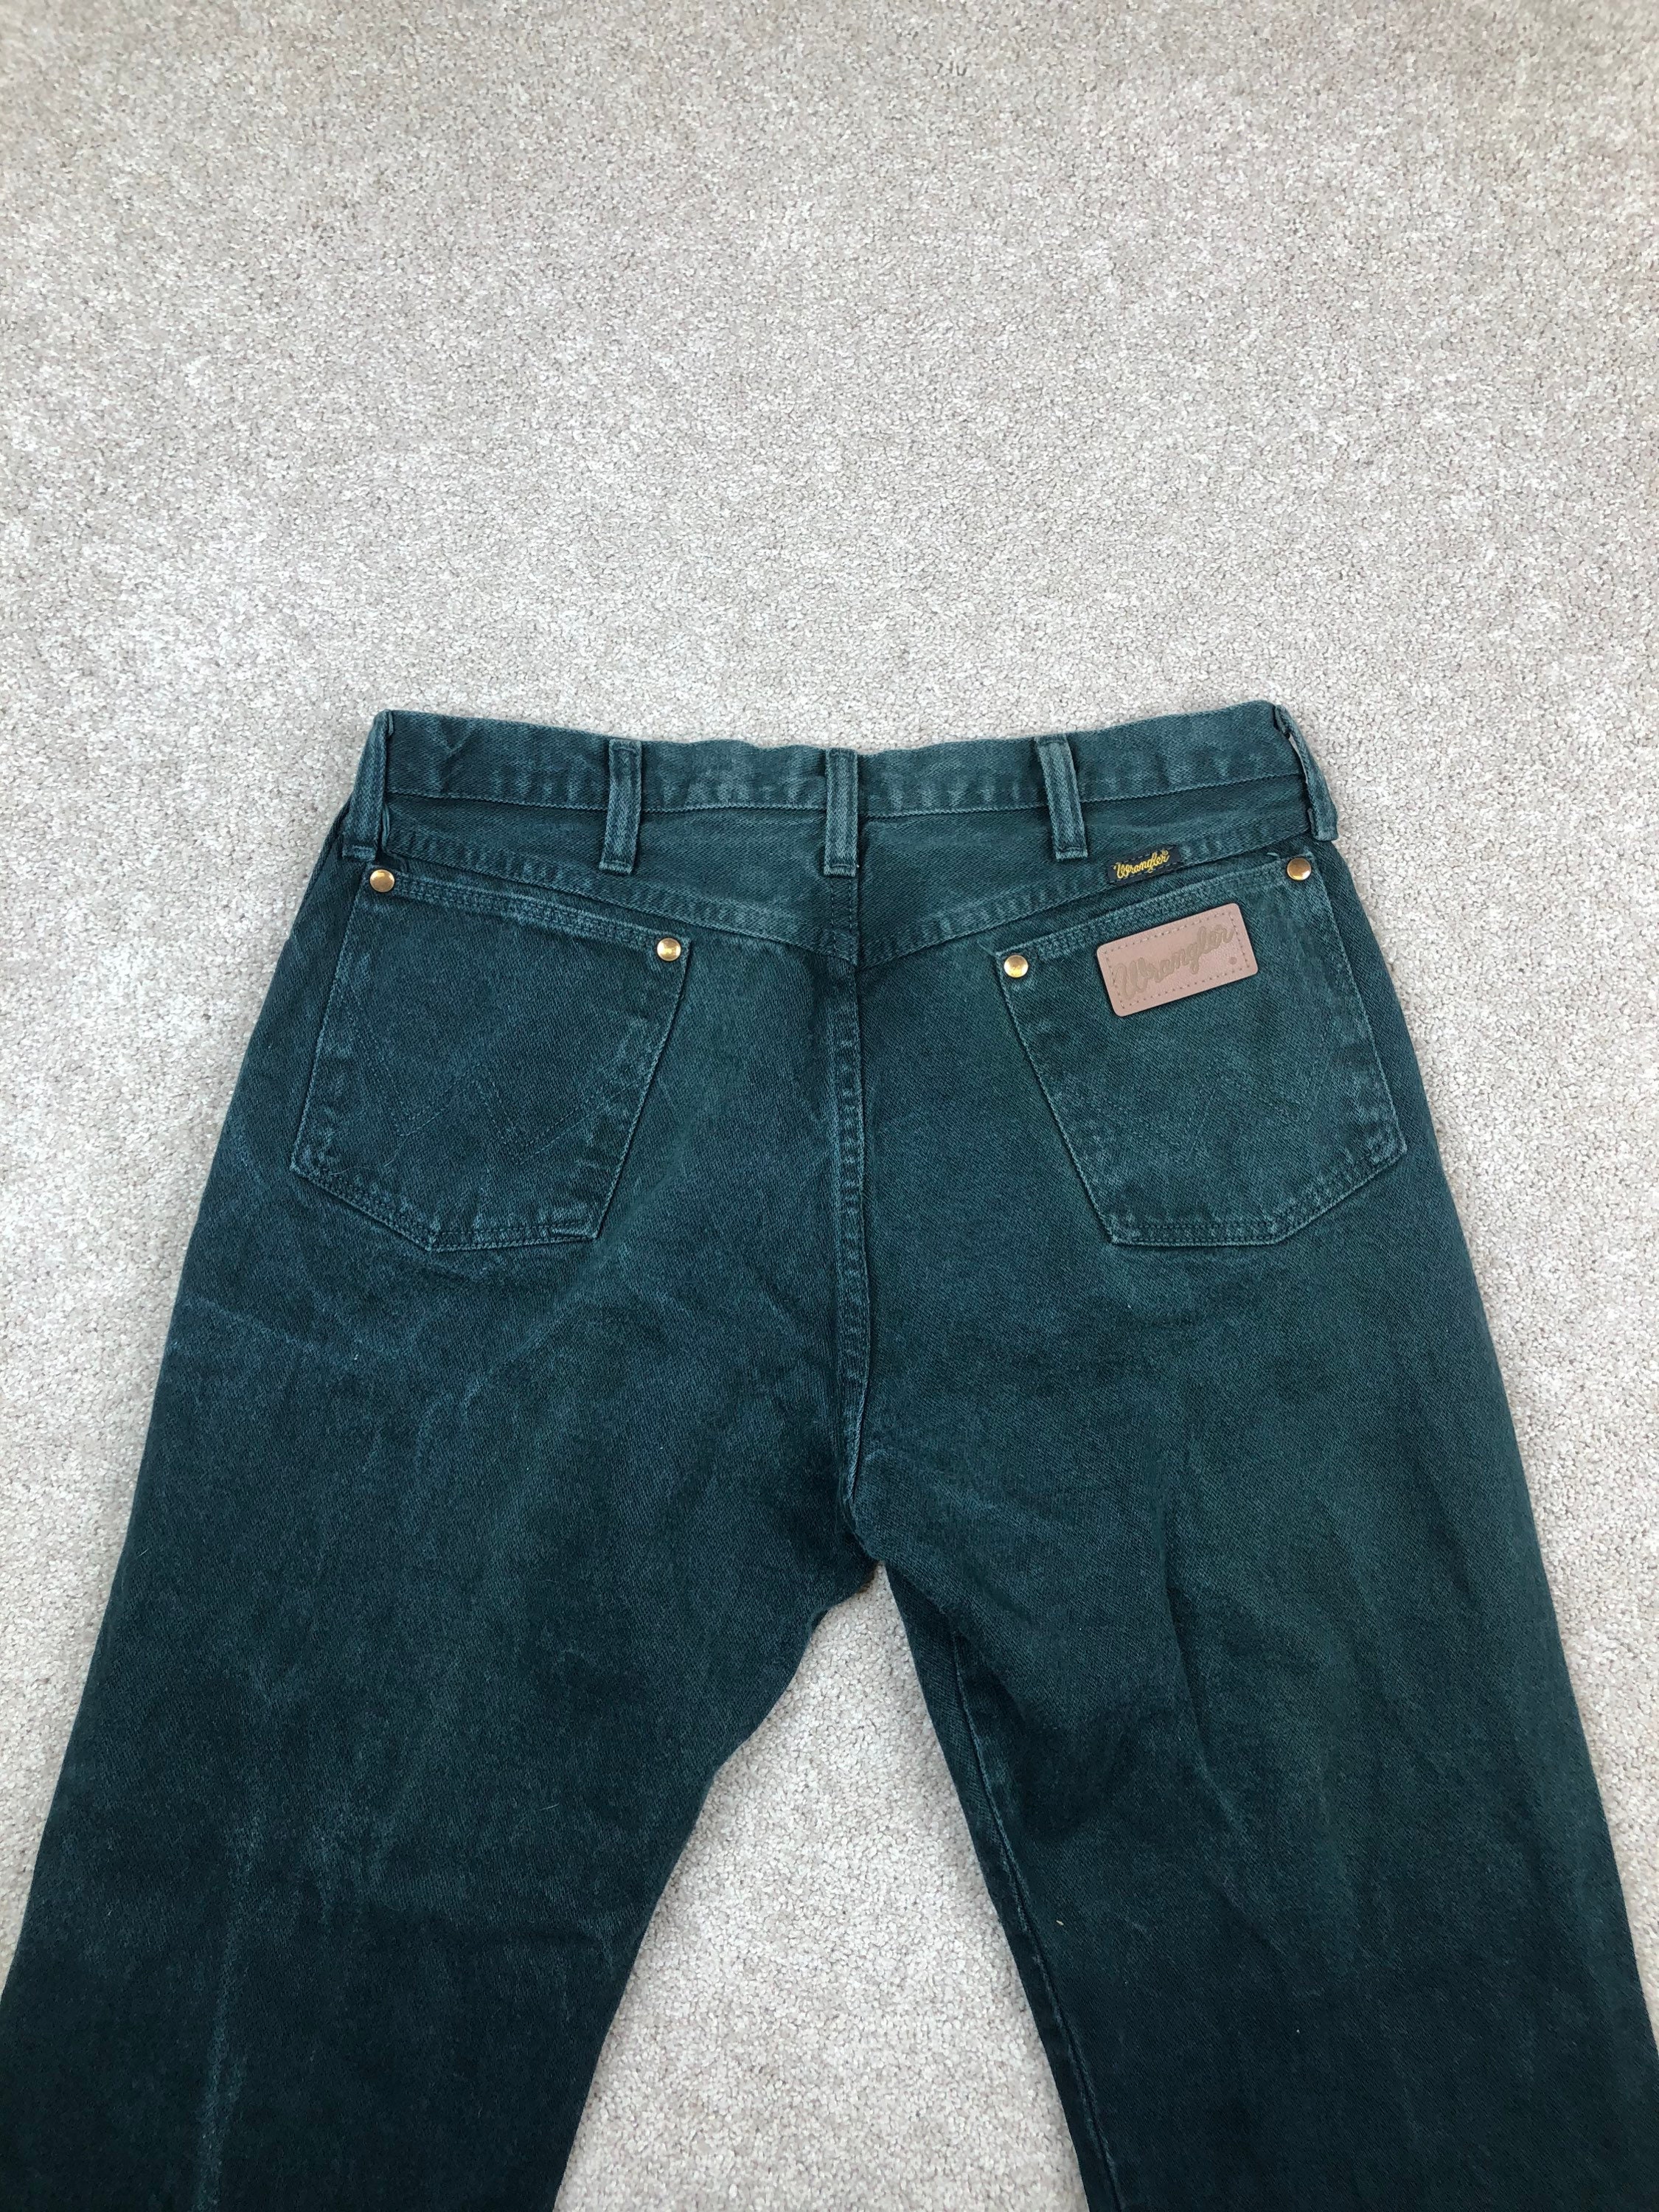 Green Wrangler Jeans - Etsy